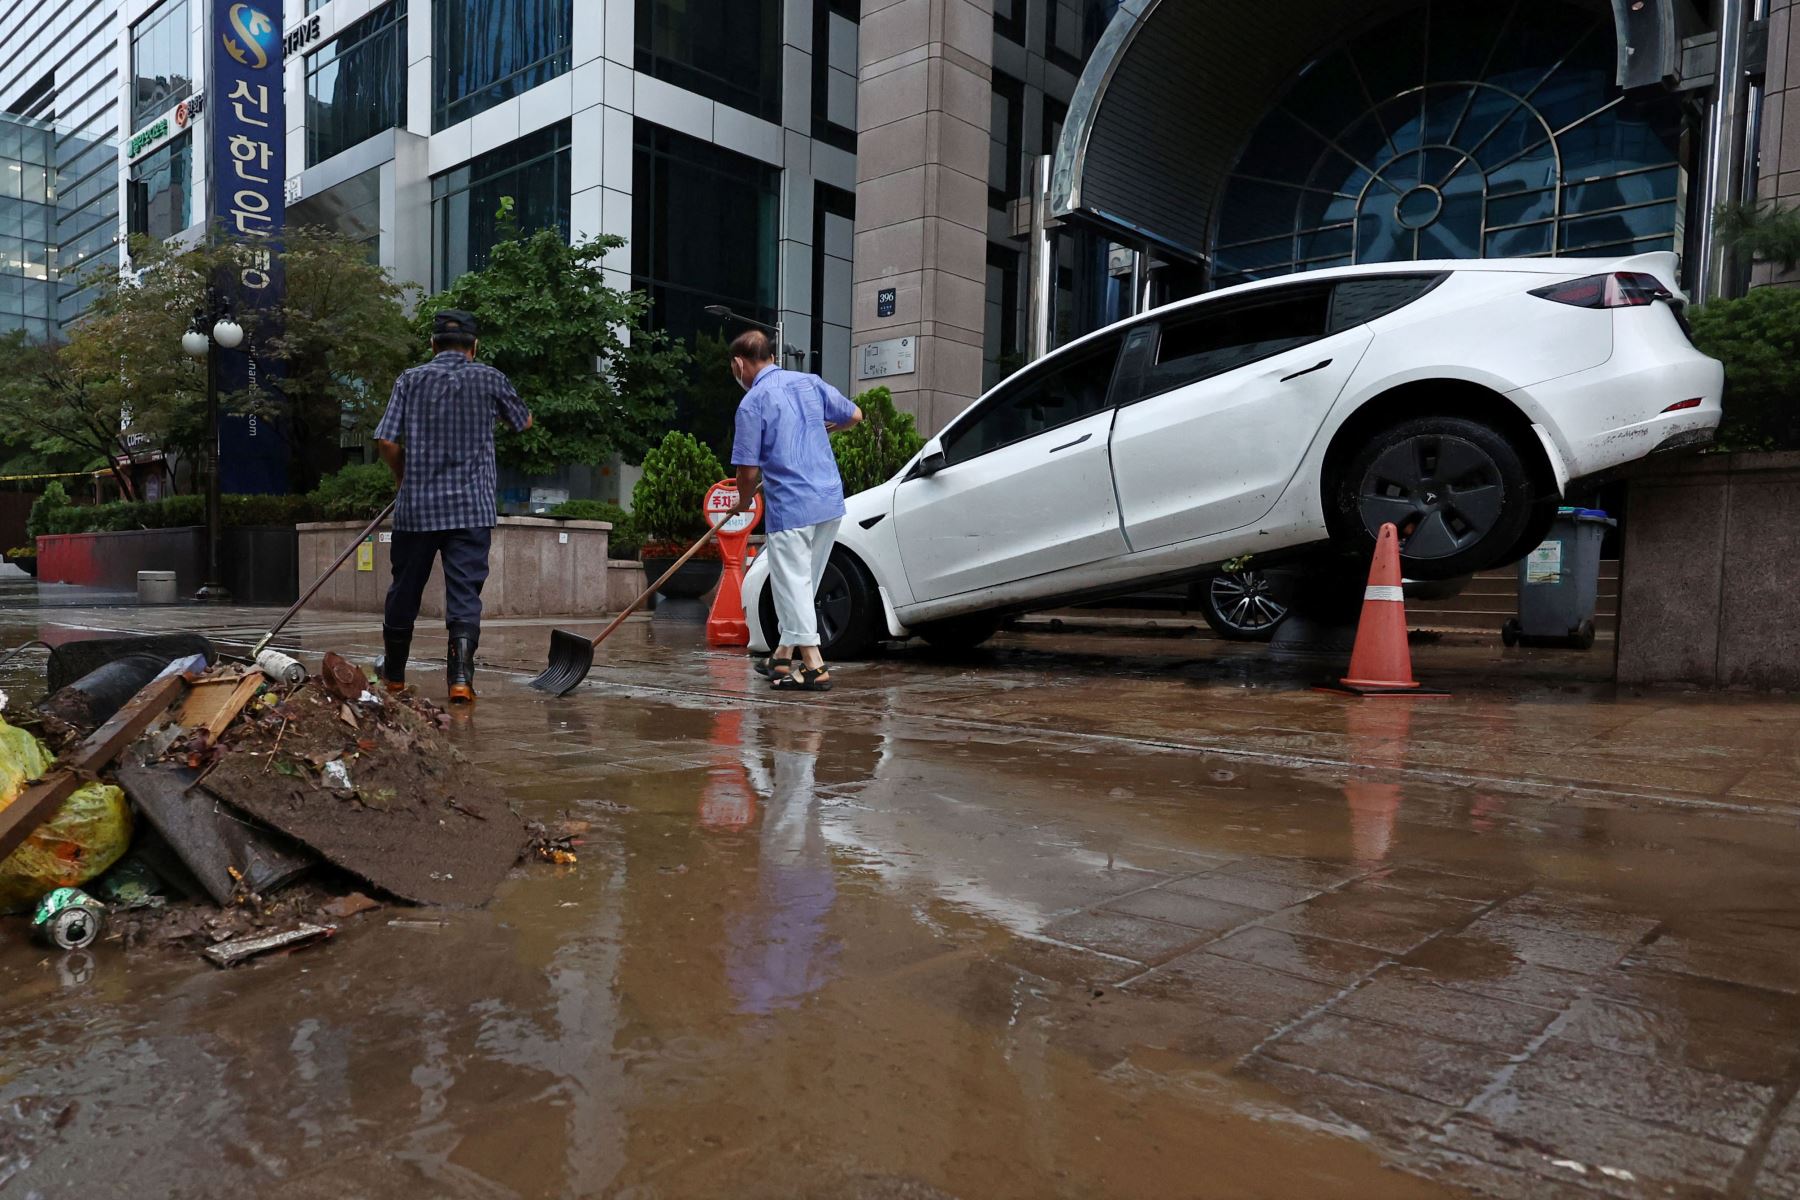 Un automóvil dañado por el agua de la inundación se ve en la calle después de fuertes lluvias en el distrito de Gangnam en Seúl . Las estaciones de metro y las principales carreteras quedaron bajo el agua en la capital de Corea del Sur, Seúl, después de que las lluvias récord causaran graves inundaciones.
Foto: AFP